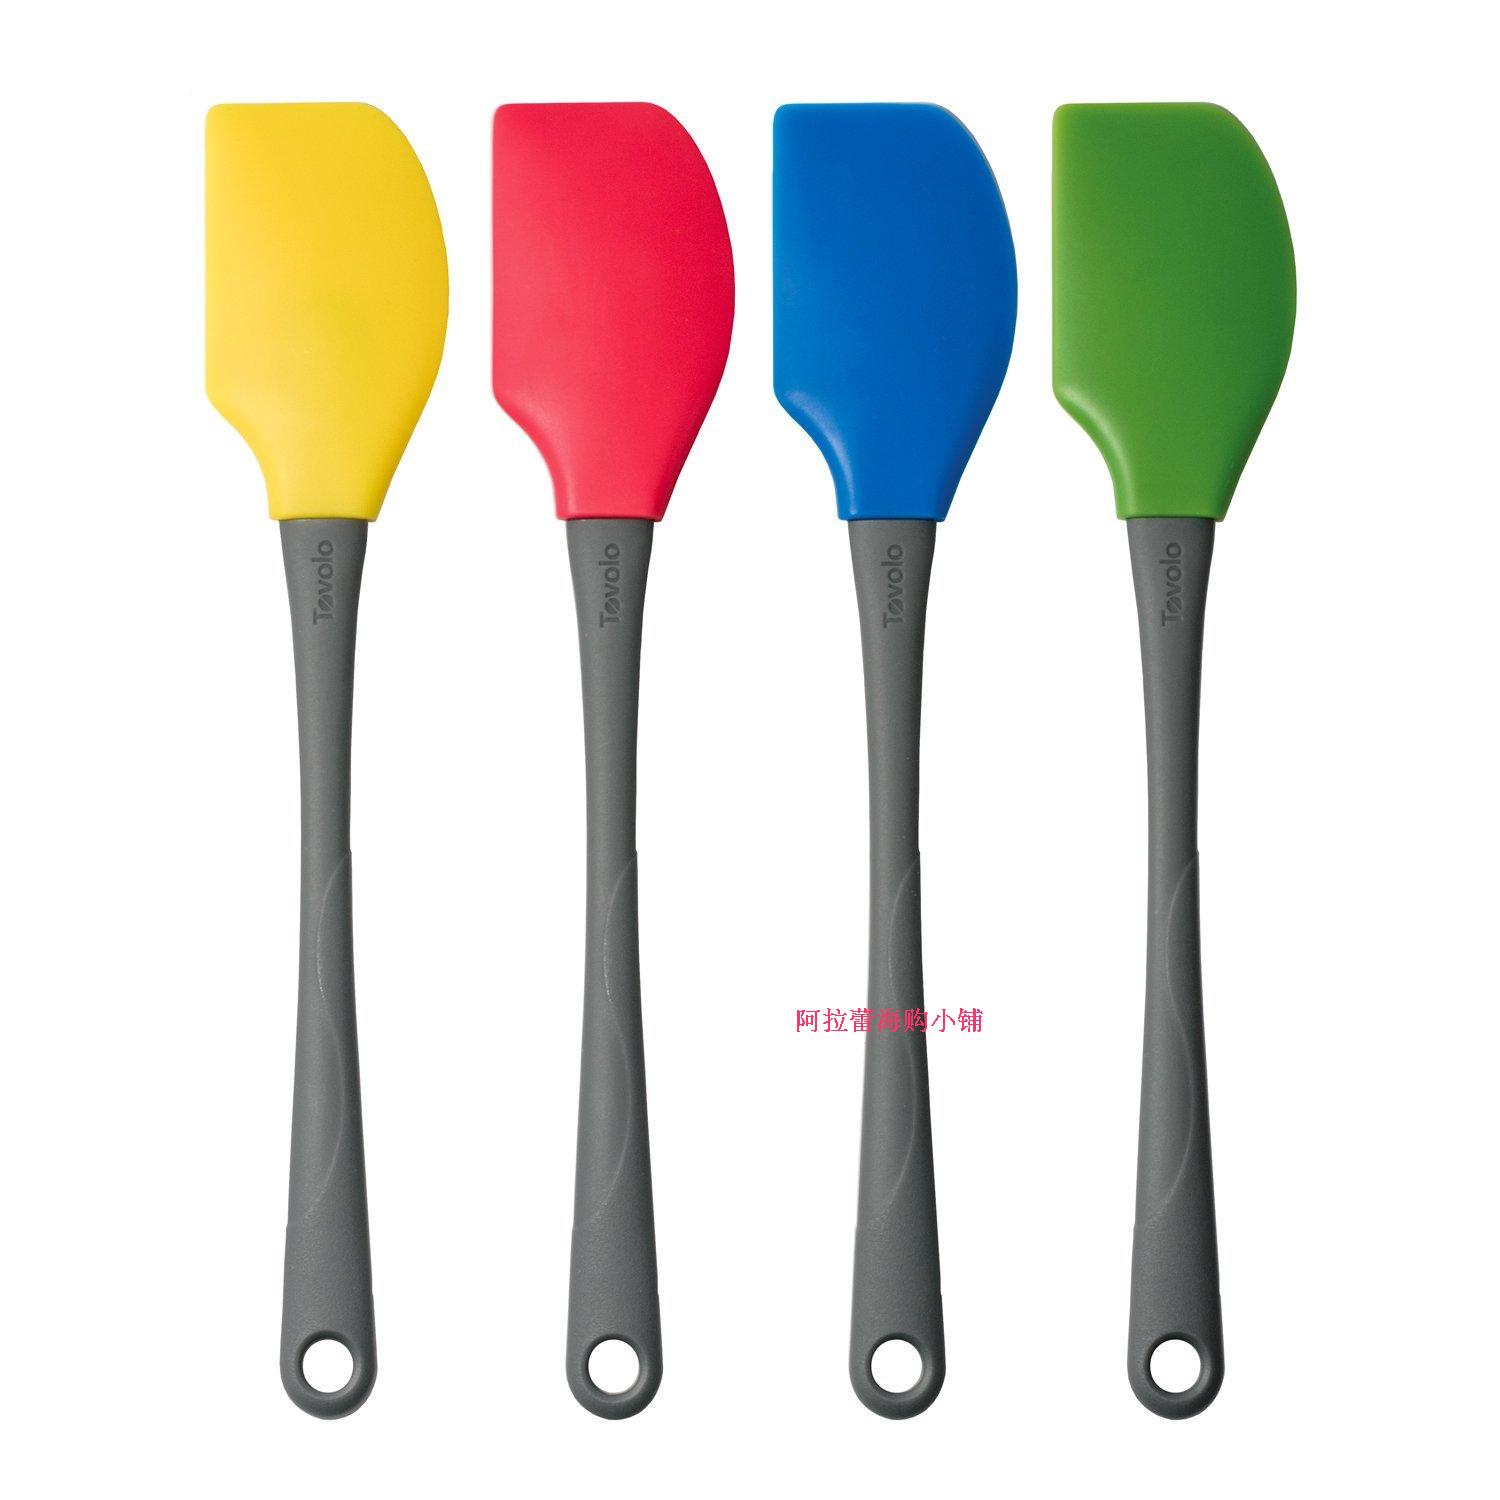 现货 美国进口Tovolo 高品质硅胶刮刀 烘焙工具 四色可选 单支